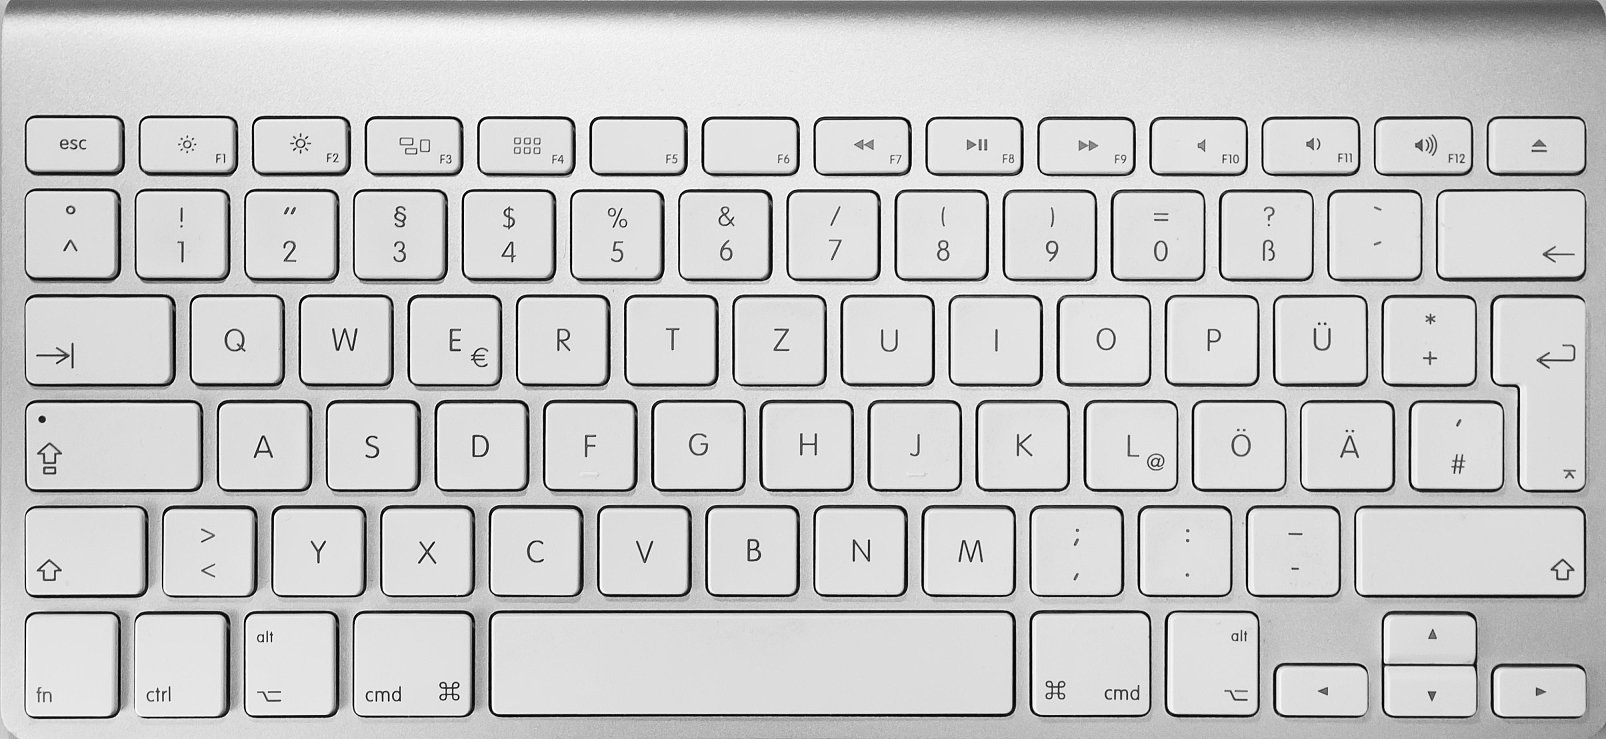 German Keyboard Layouts